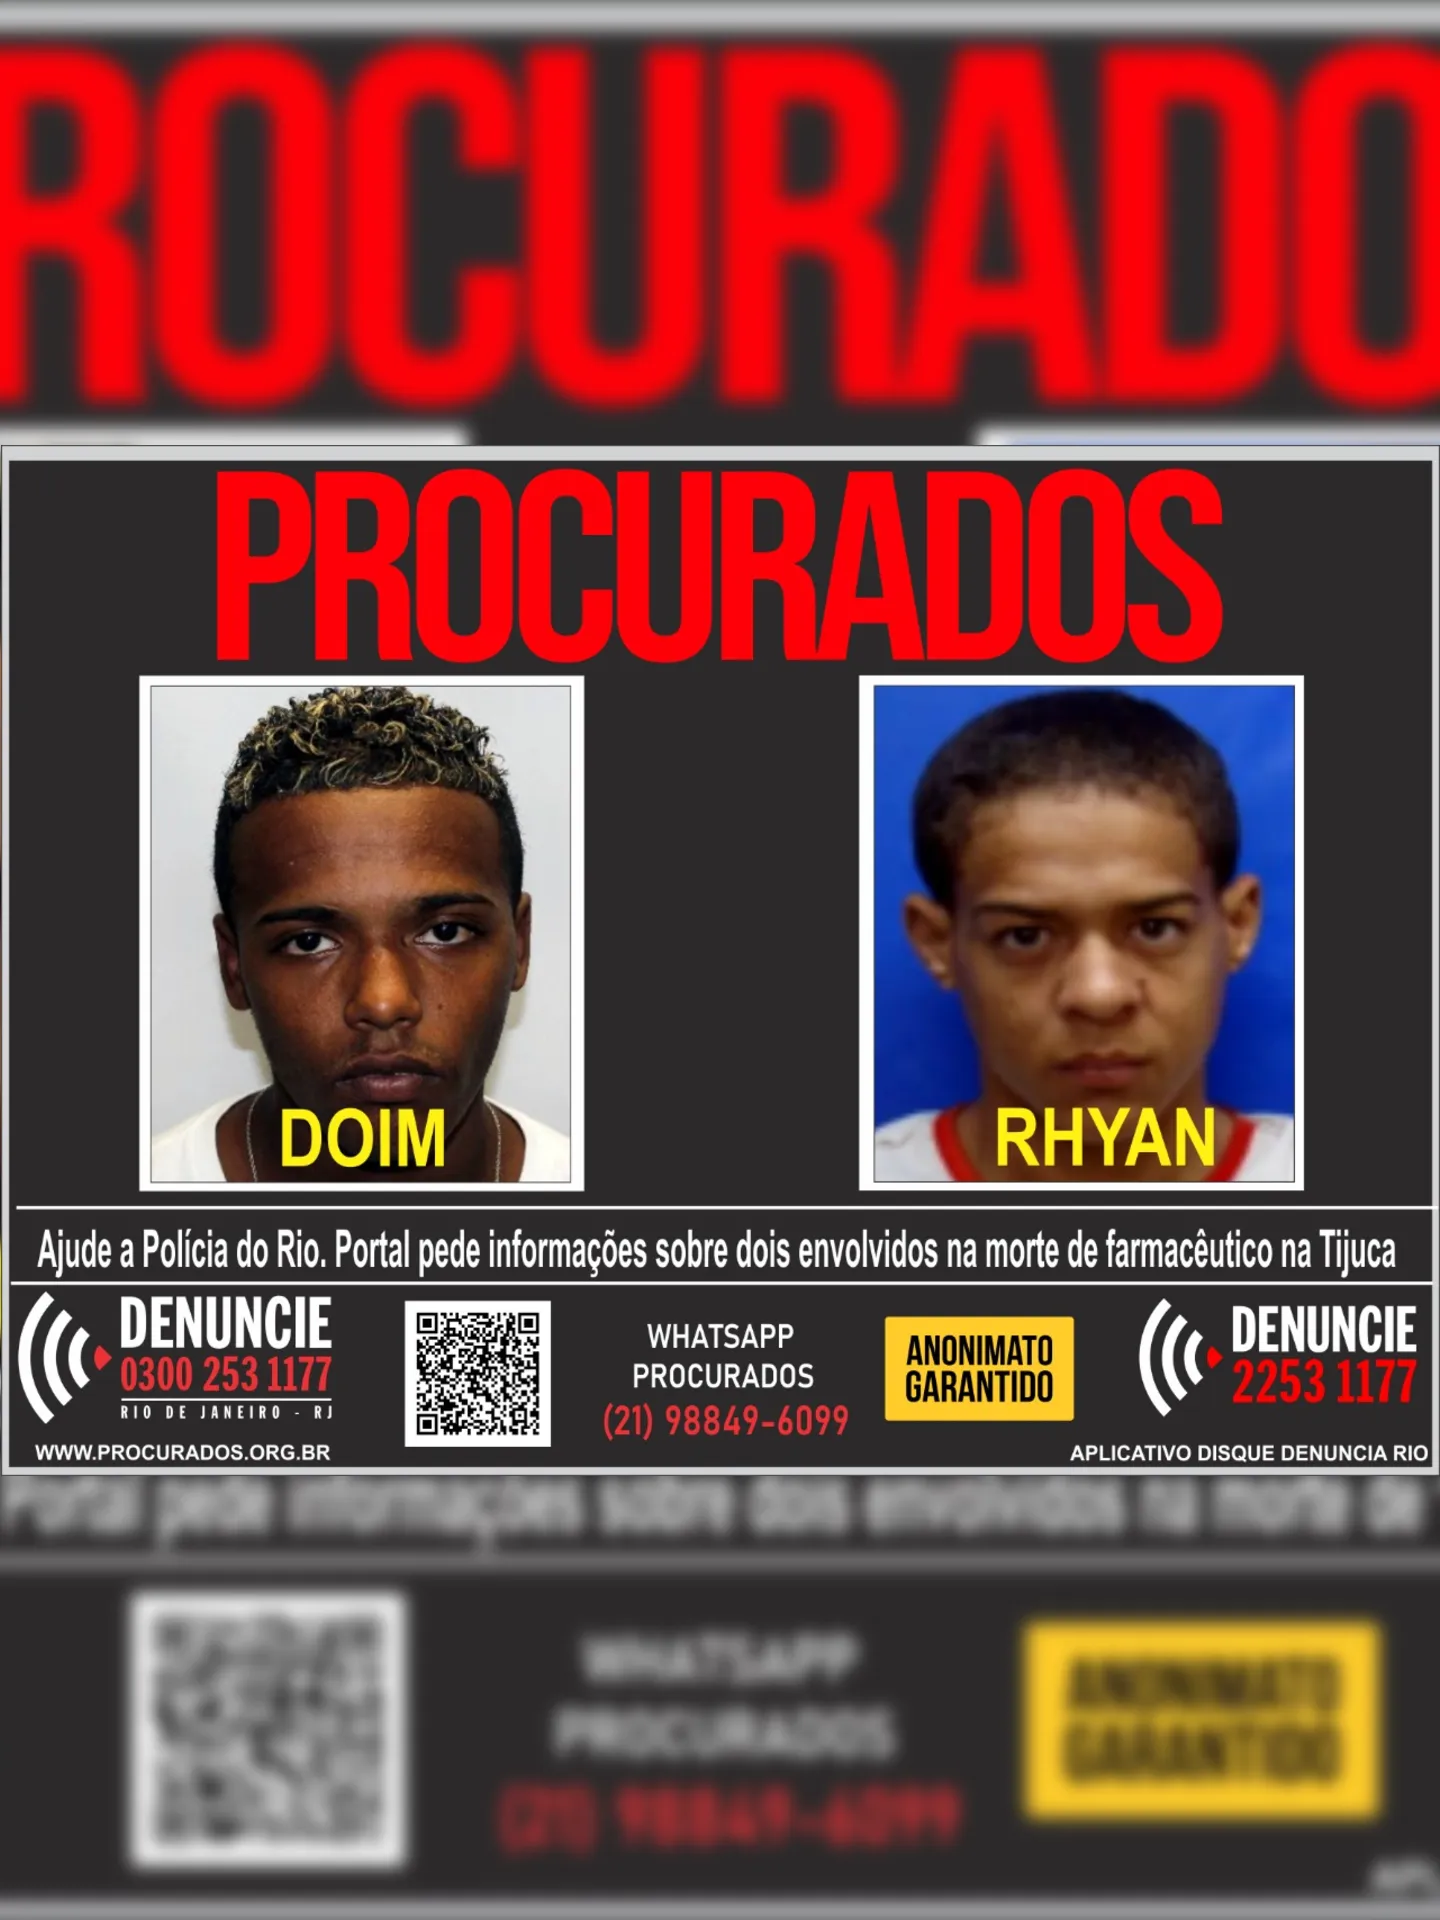 Portal dos Procurados lançou cartaz com fotos dos acusado